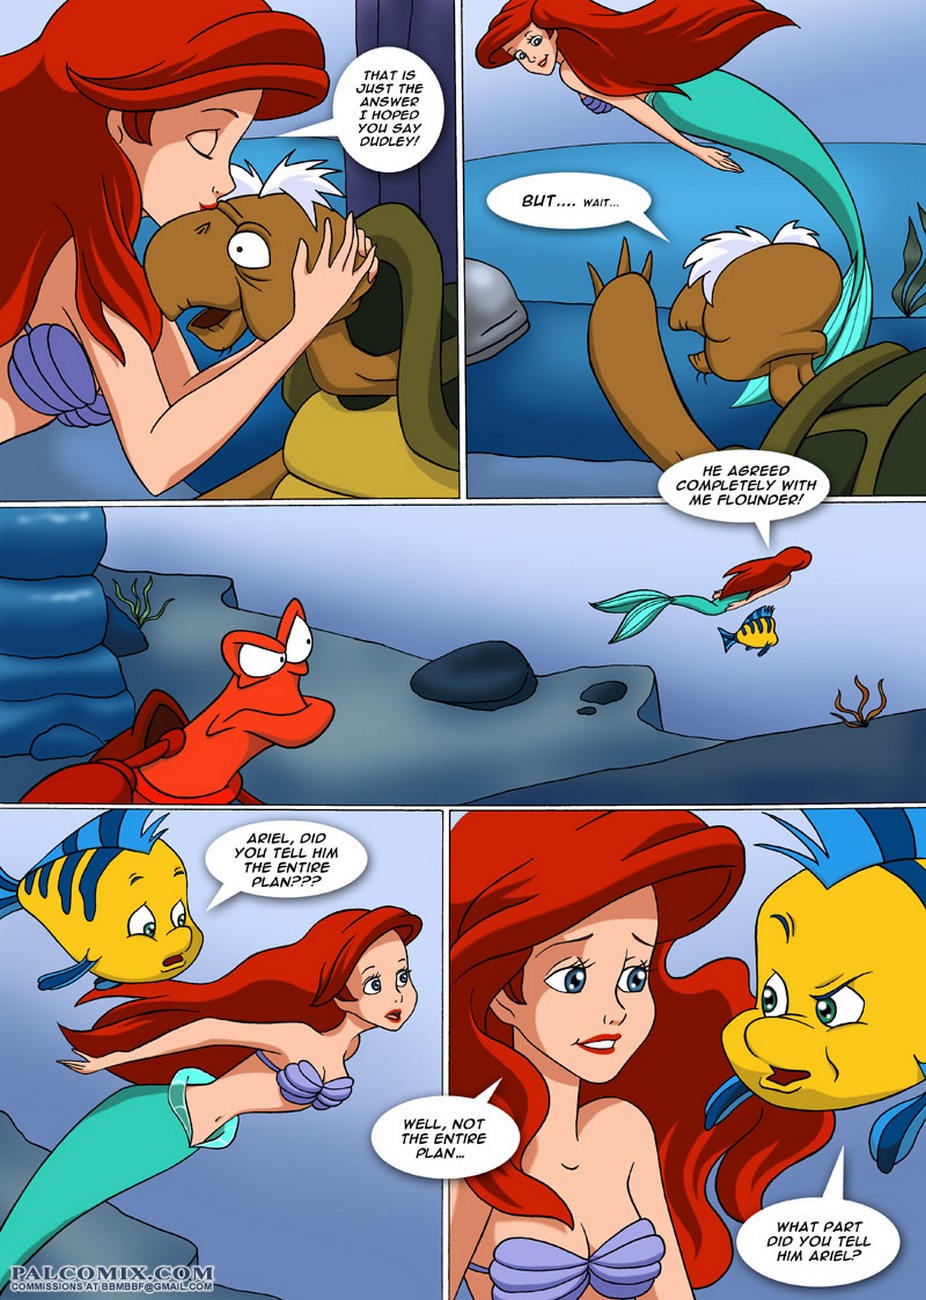 bir Yeni discovery için Ariel